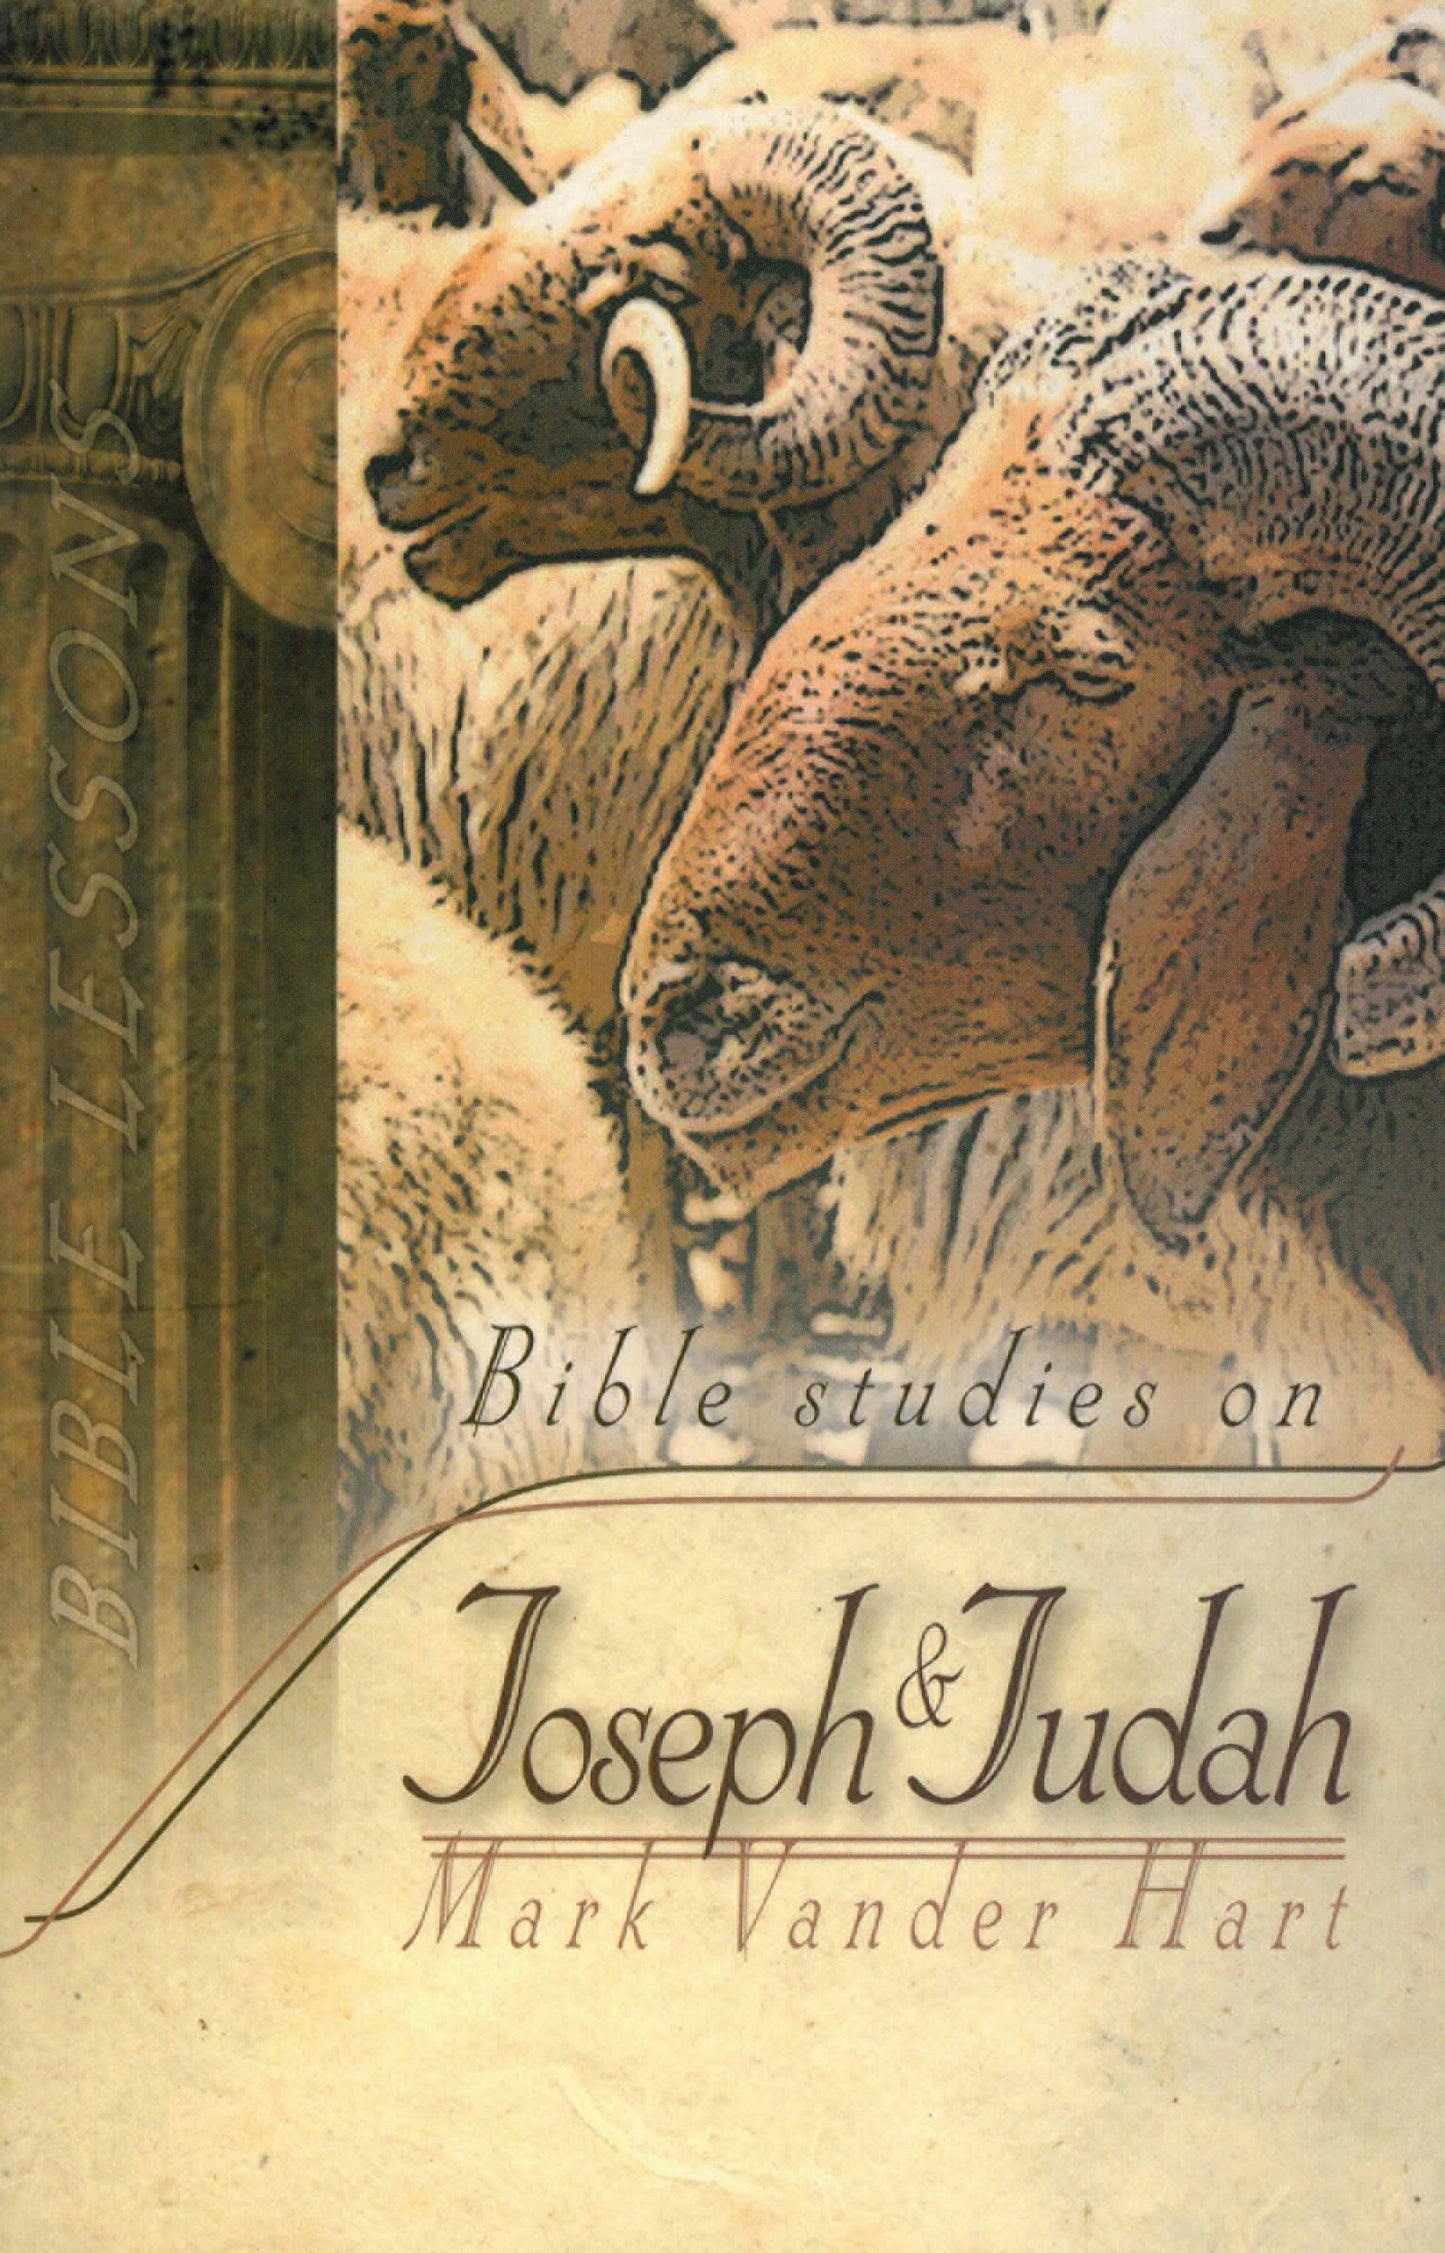 Joseph and Judah